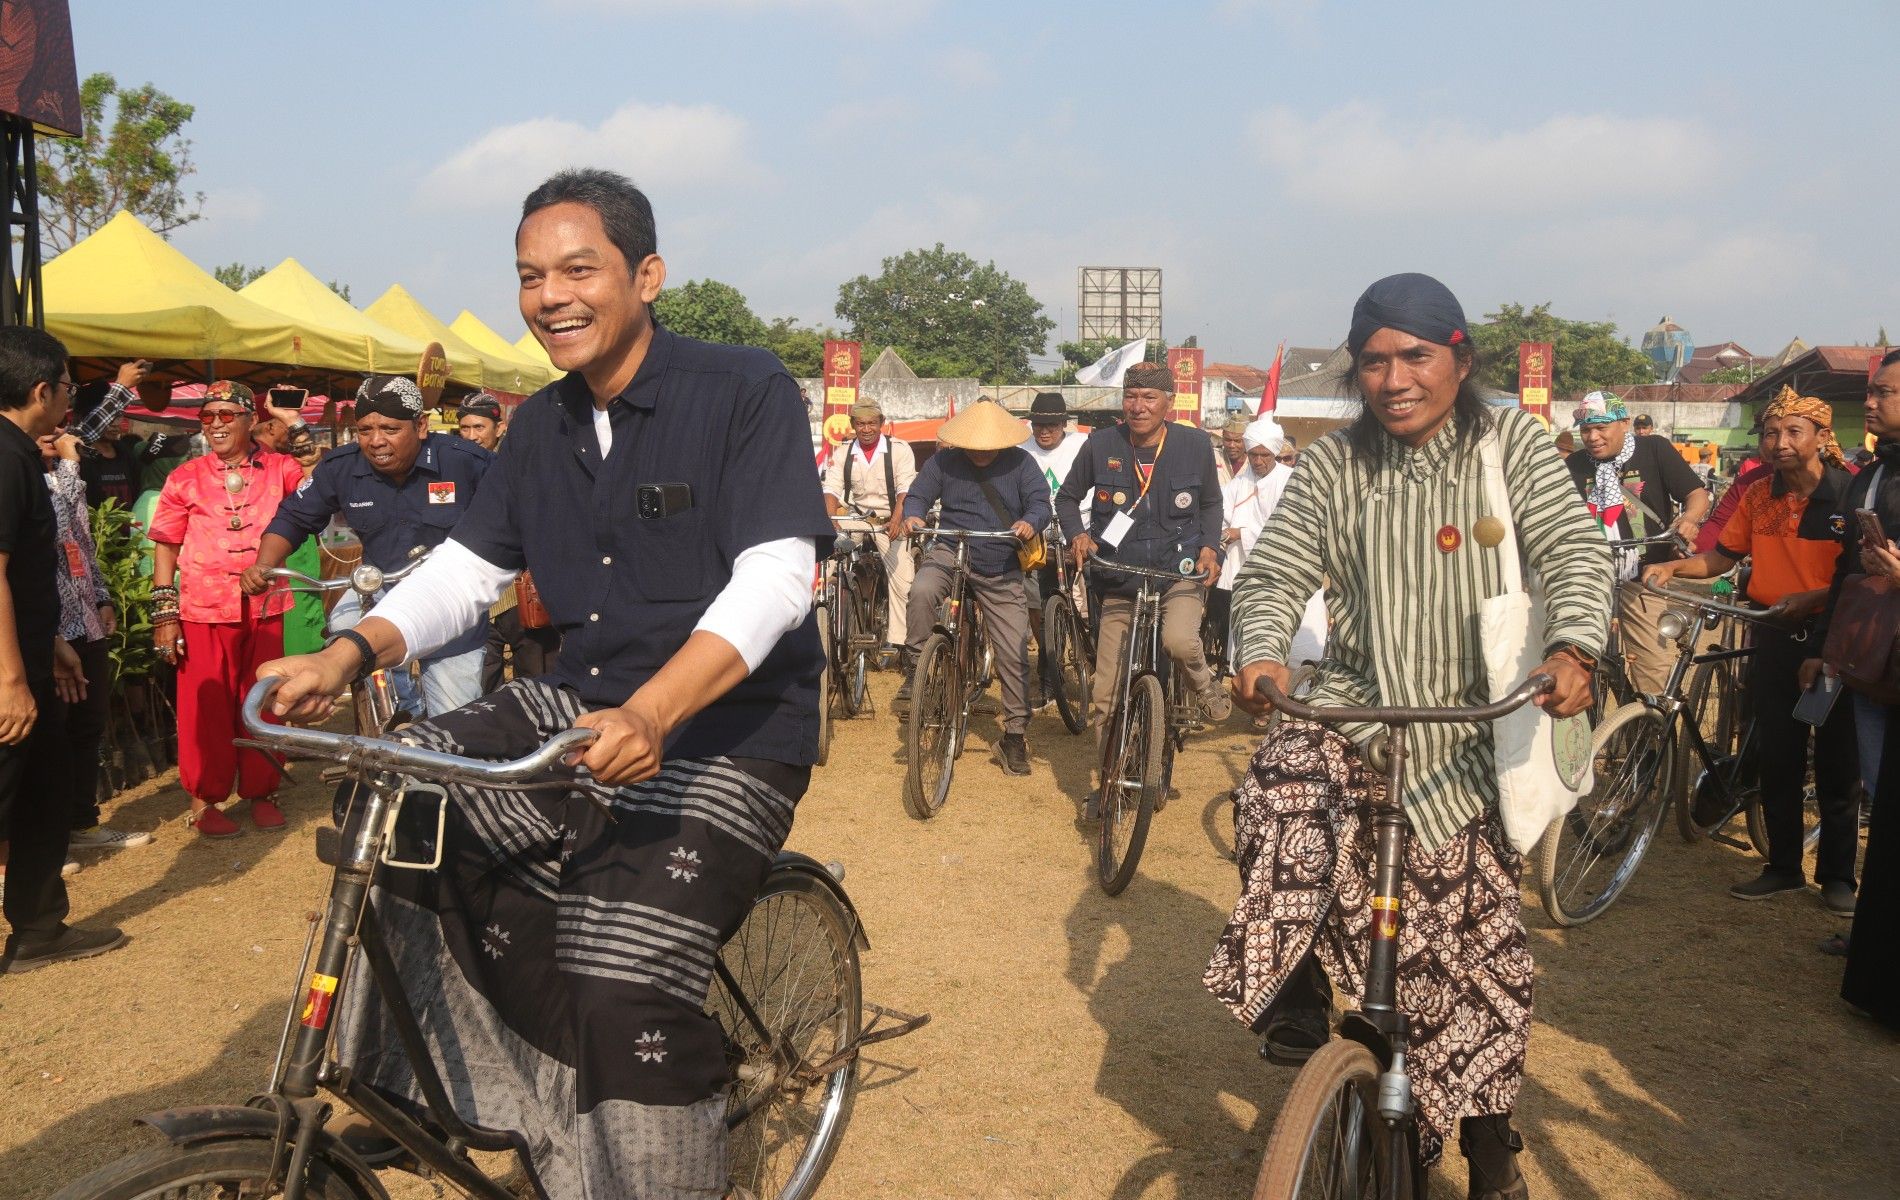 Presiden JRO #3 Muntowil (berpakaiannJawa) juga ikut bersepeda bersama ribuan peserta dengan menggunakan busana khas jawa.